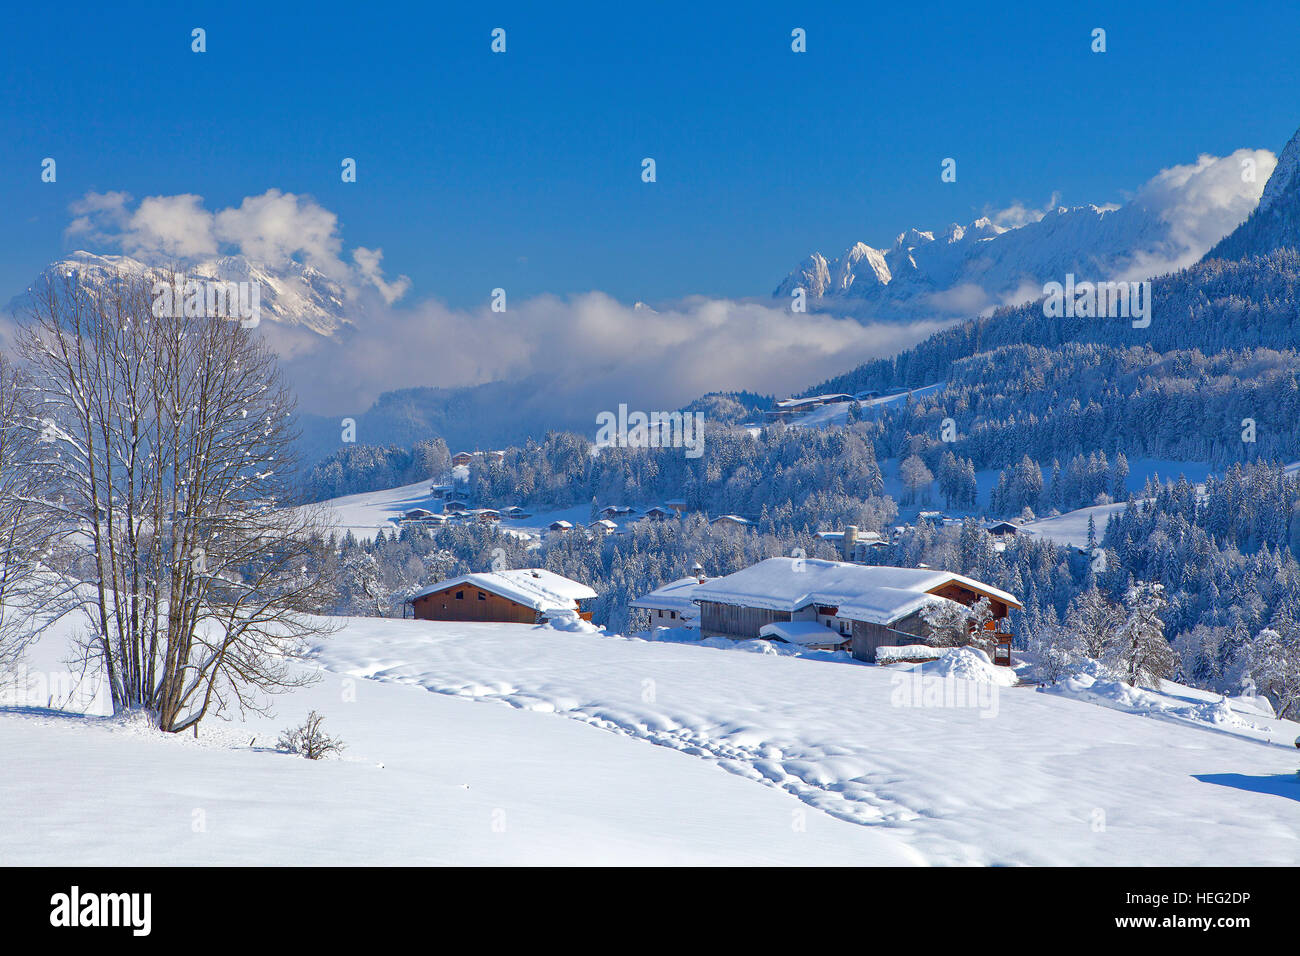 Autriche, Tyrol, Thiersee (village), les fermes de Hinterthiersee (village) vue de Wilder Kaiser (montagne) Banque D'Images